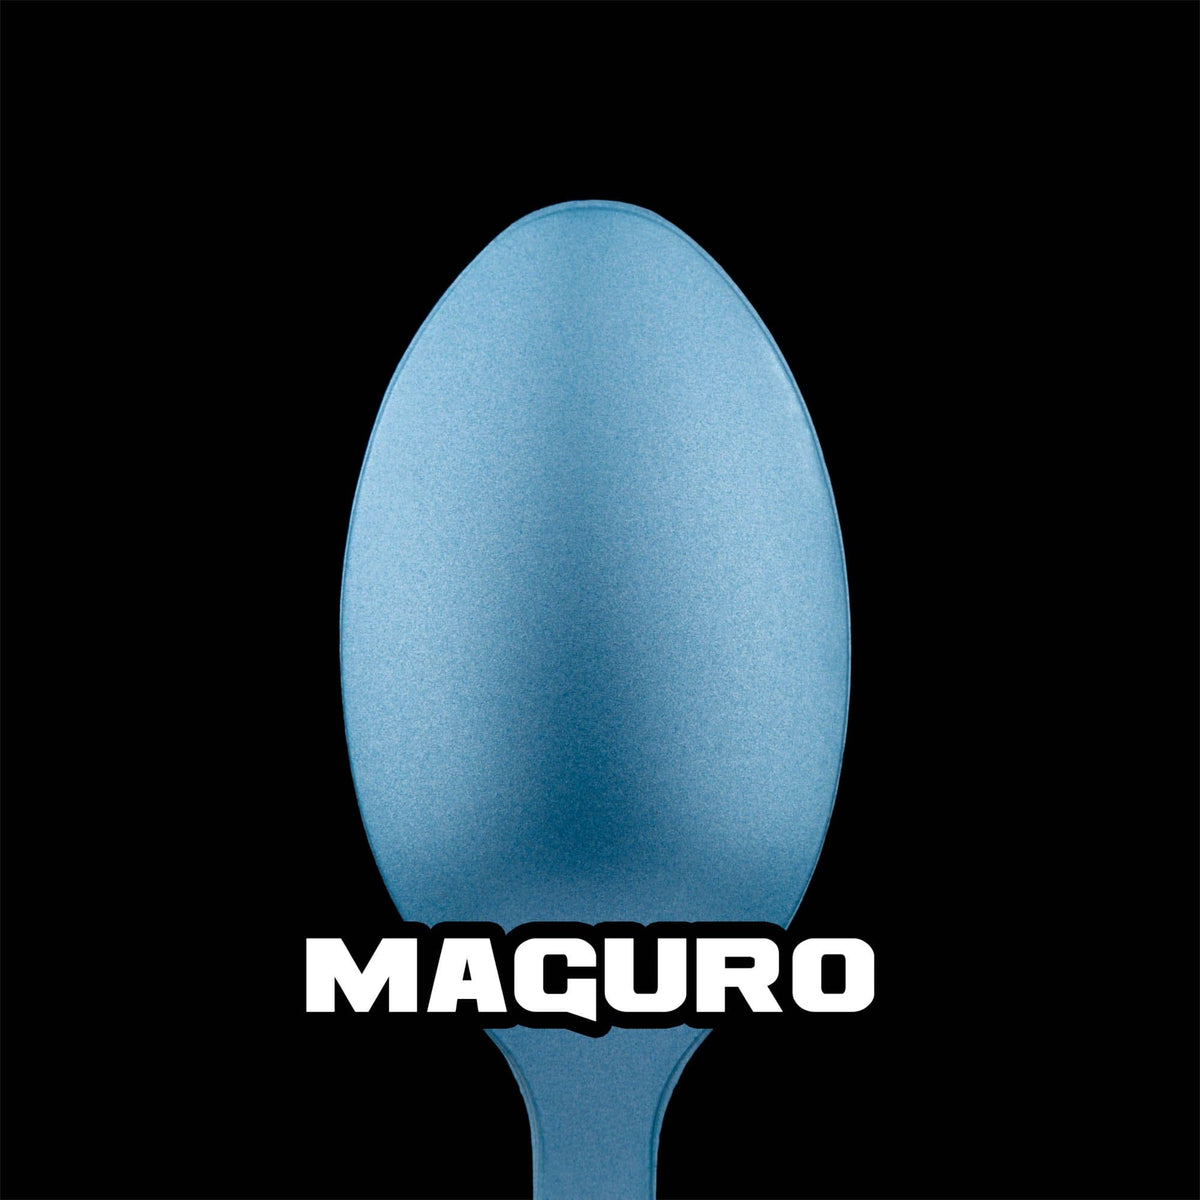 Maguro Metallic Acrylic Paint Metallic Turbo Dork Exit 23 Games Maguro Metallic Acrylic Paint